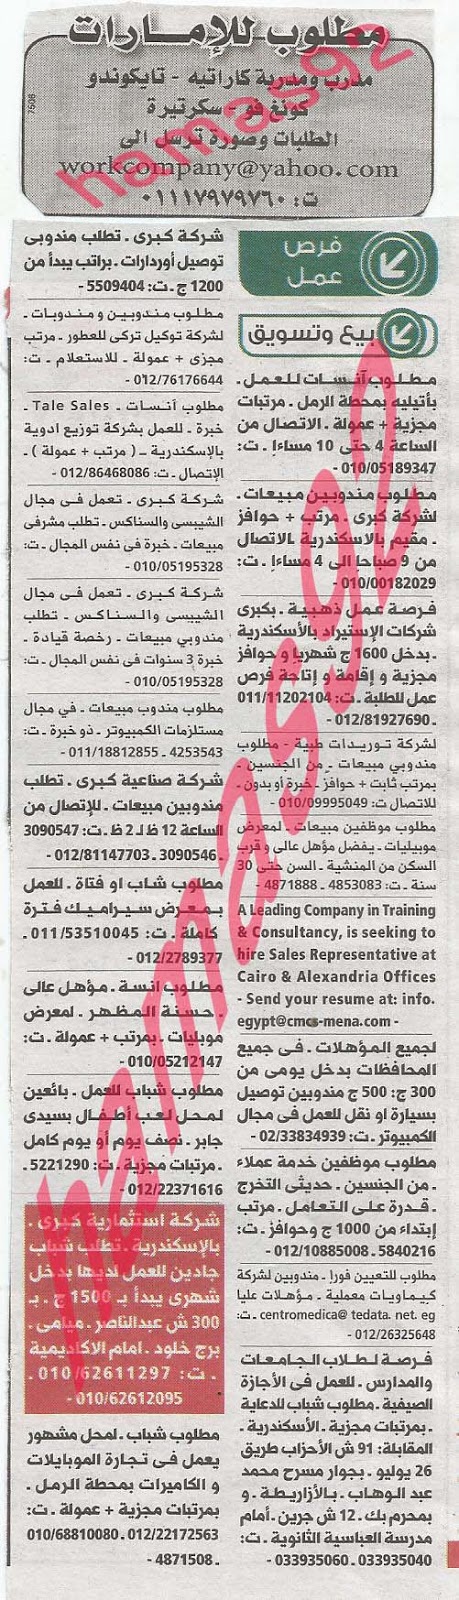 وظائف خالية فى جريدة الوسيط الاسكندرية الاثنين 29-07-2013 %D9%88+%D8%B3+%D8%B3+6